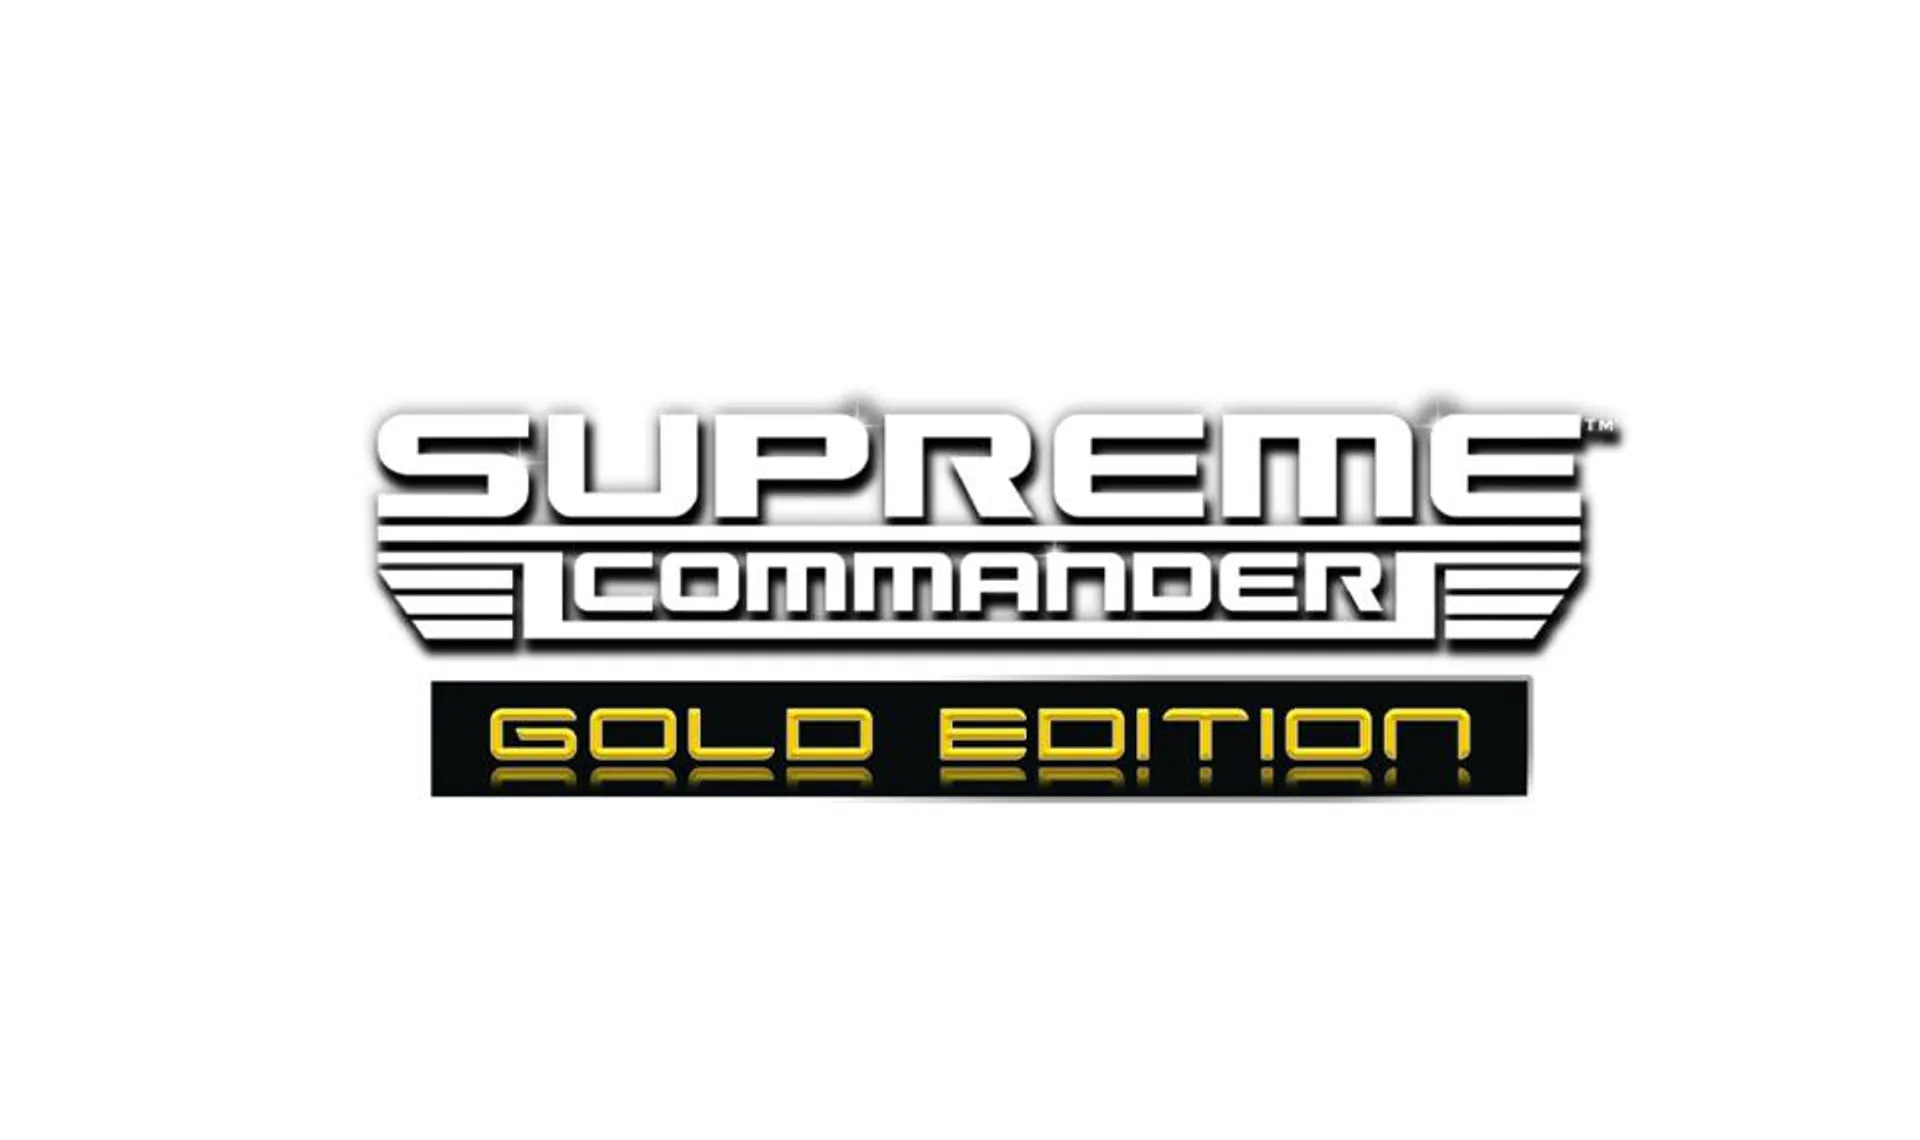 Supreme Commander Gold Edition